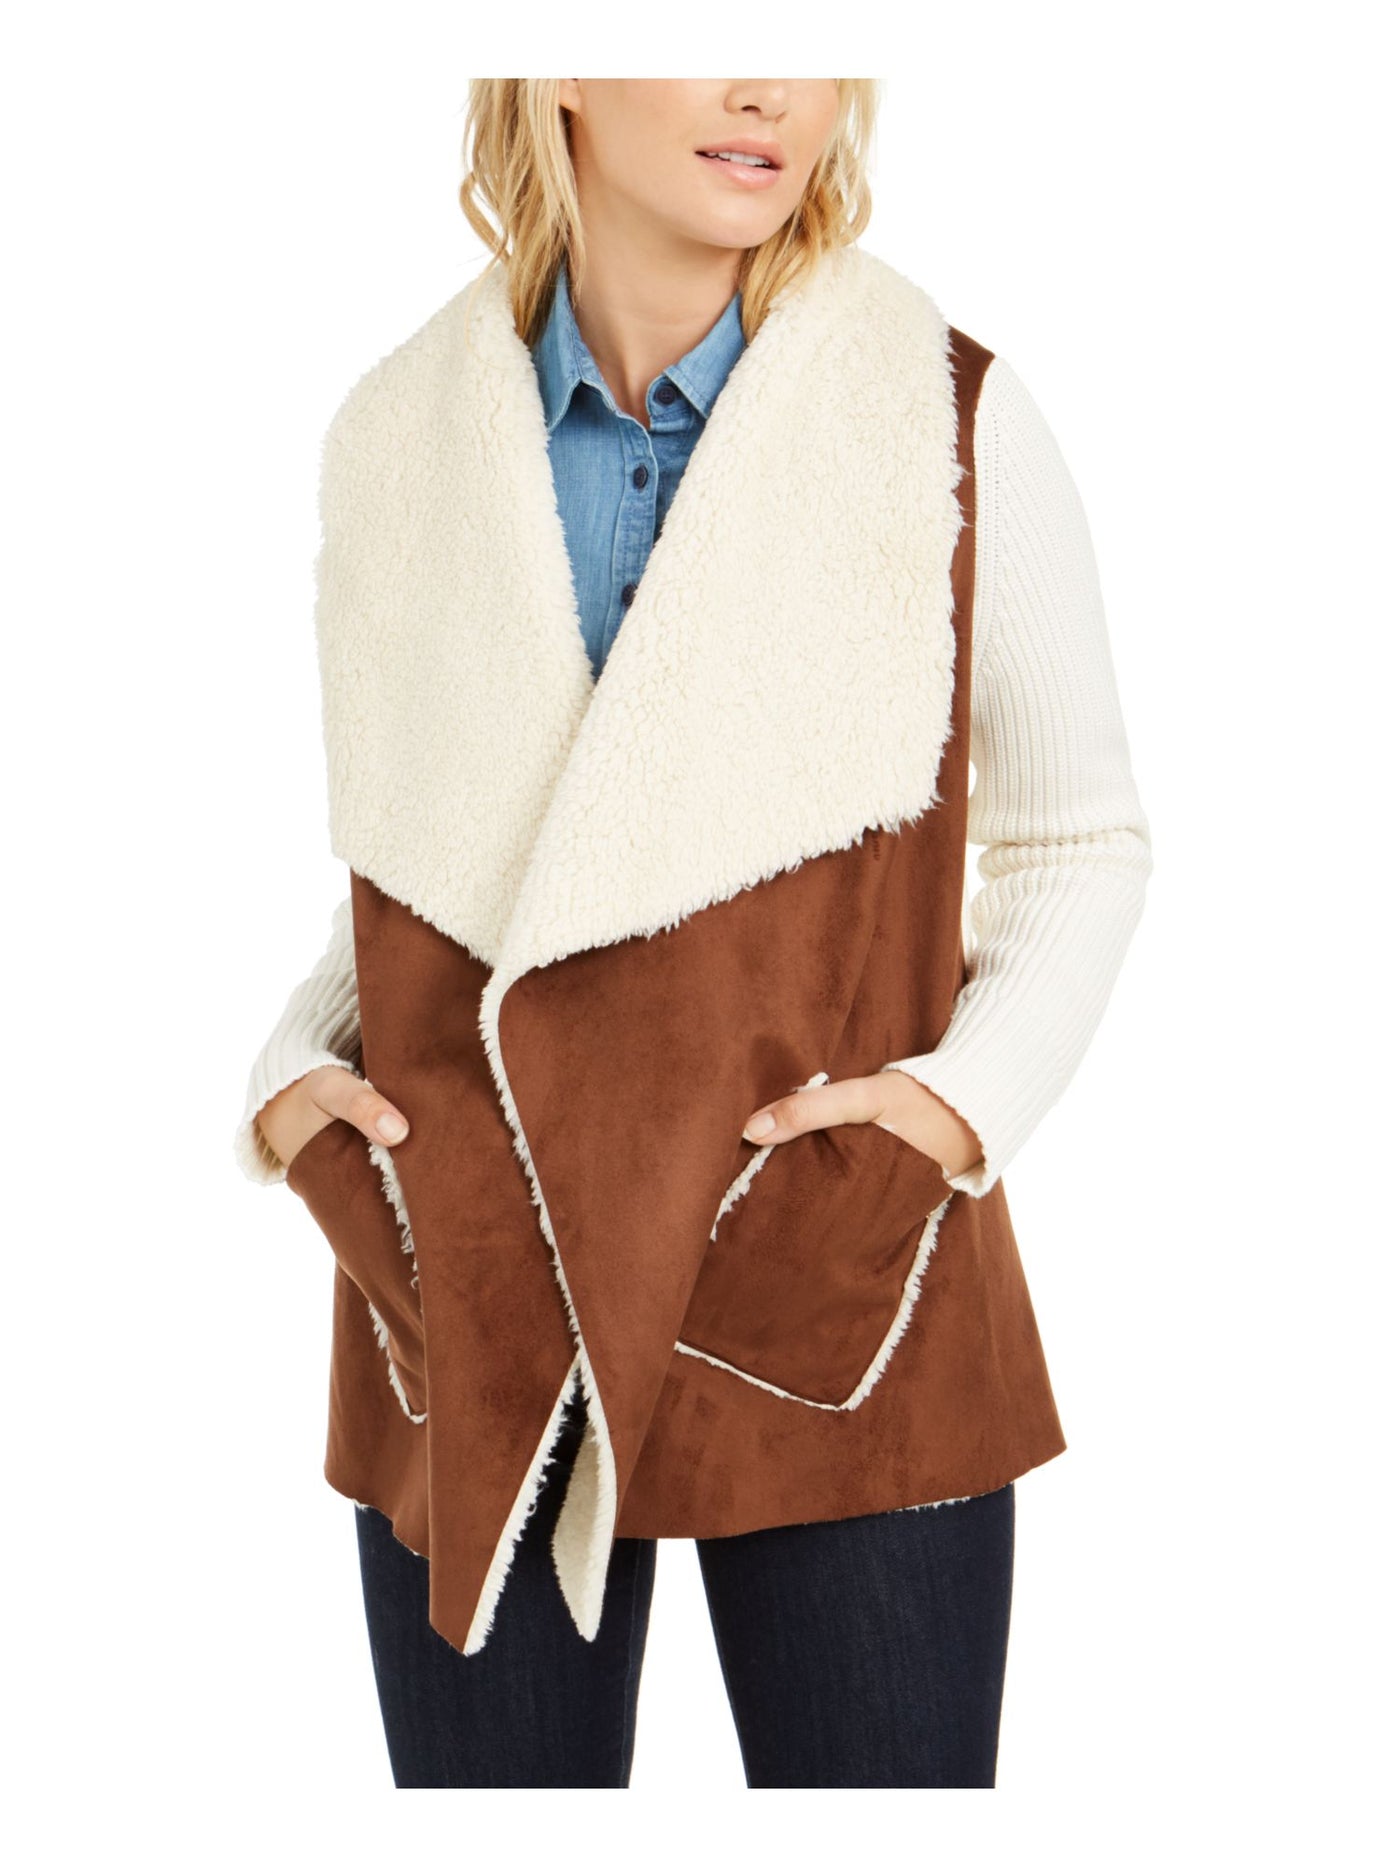 TOMMY HILFIGER Womens Beige Wrap Winter Jacket Coat M